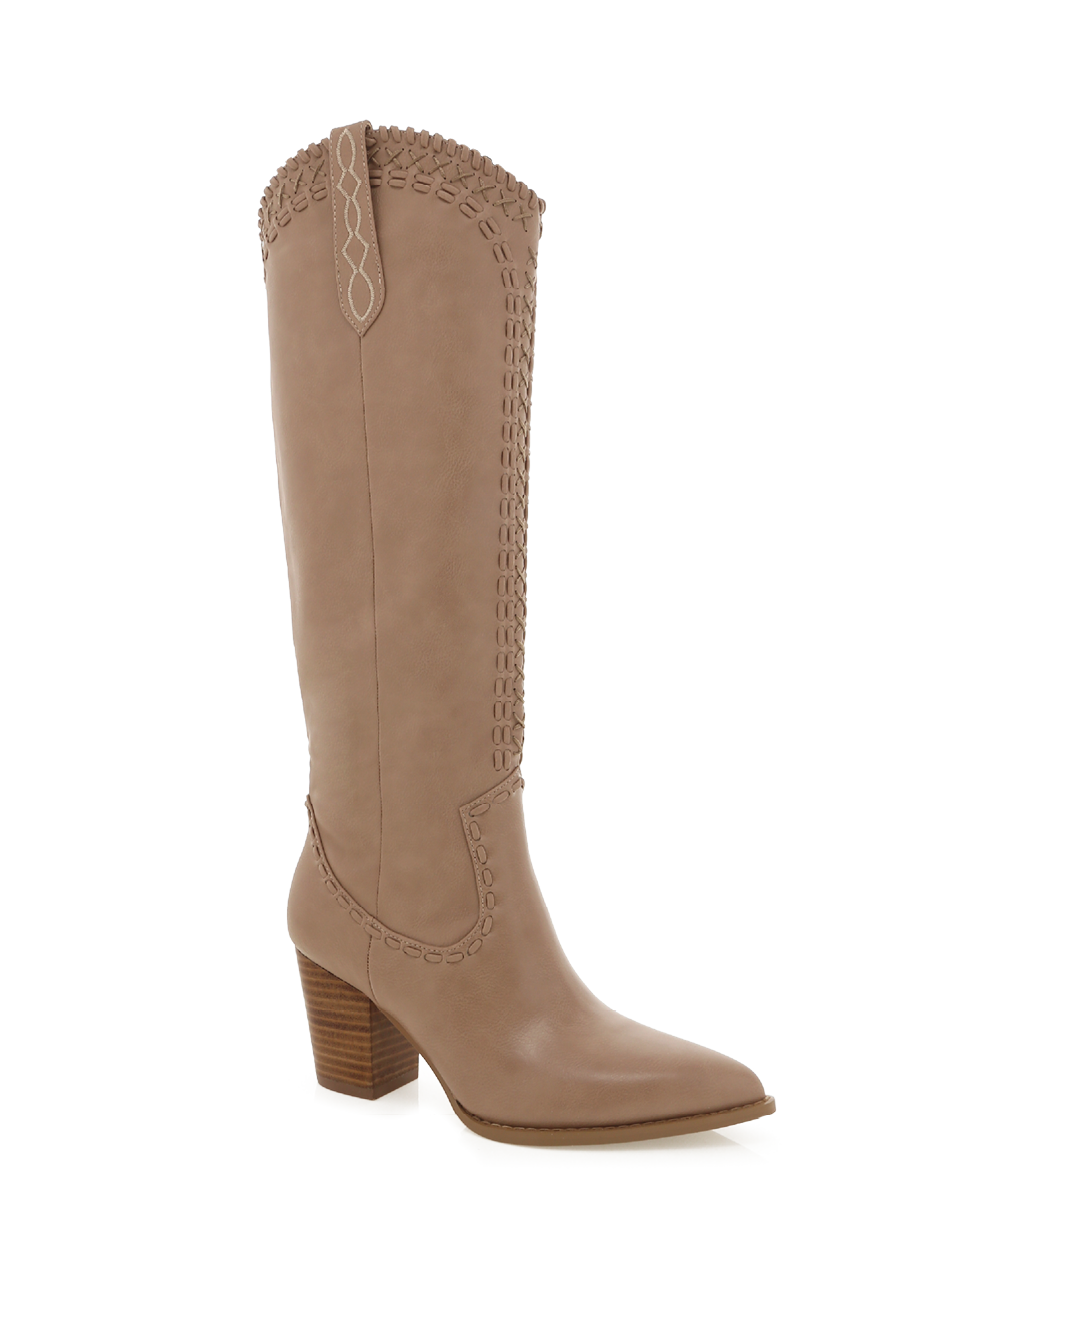 FINLEY - TAUPE-Boots-Billini-BILLINI USA